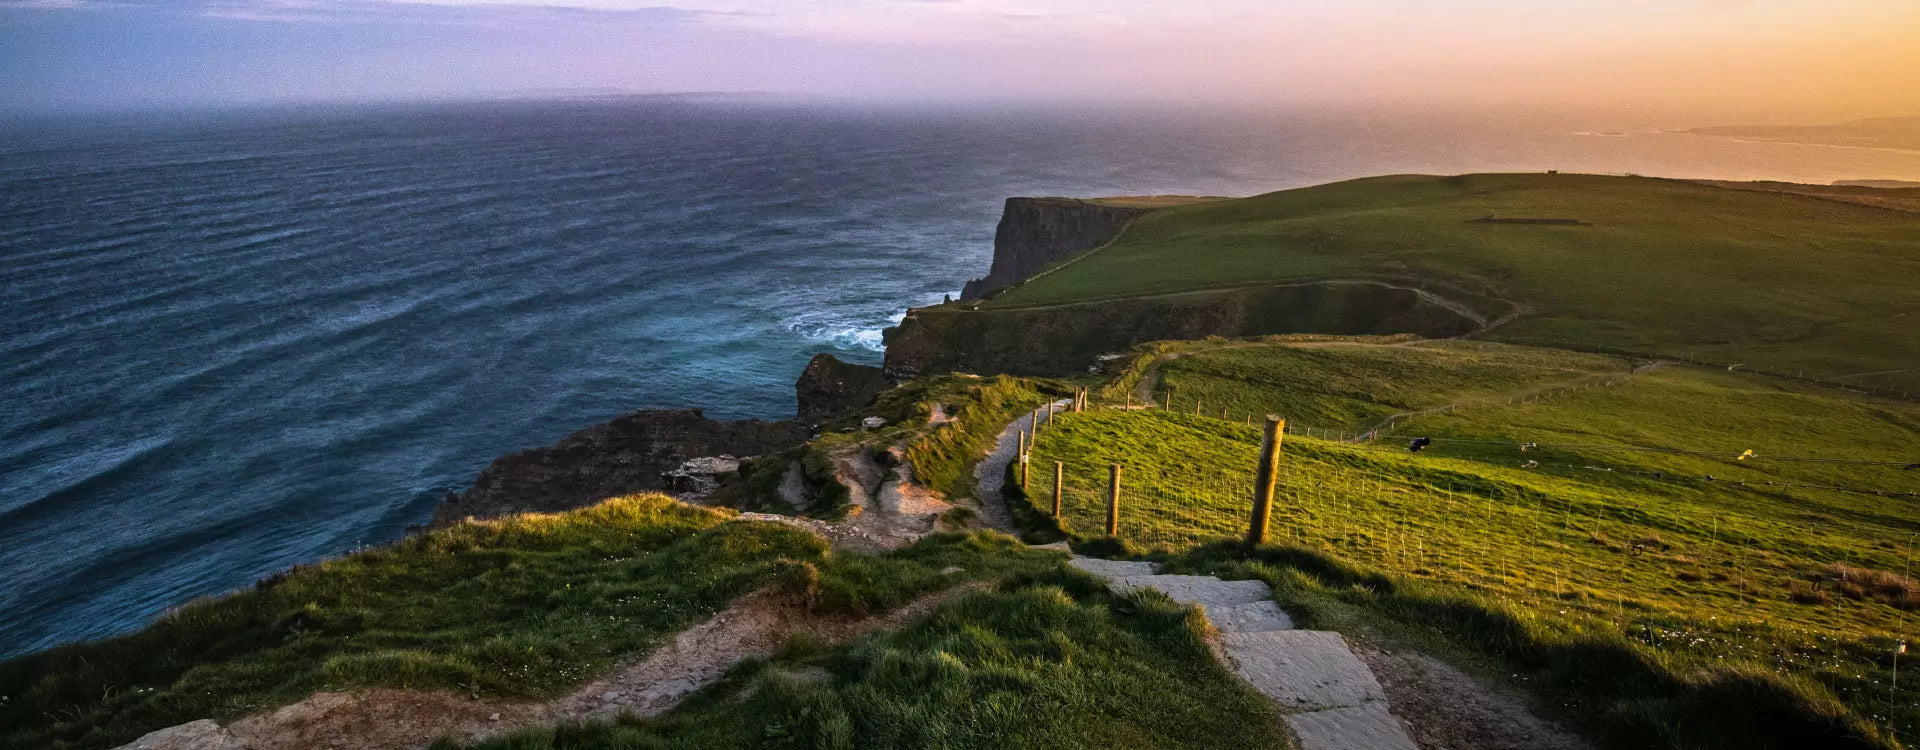 The Wild Atlantic Way (Ireland)